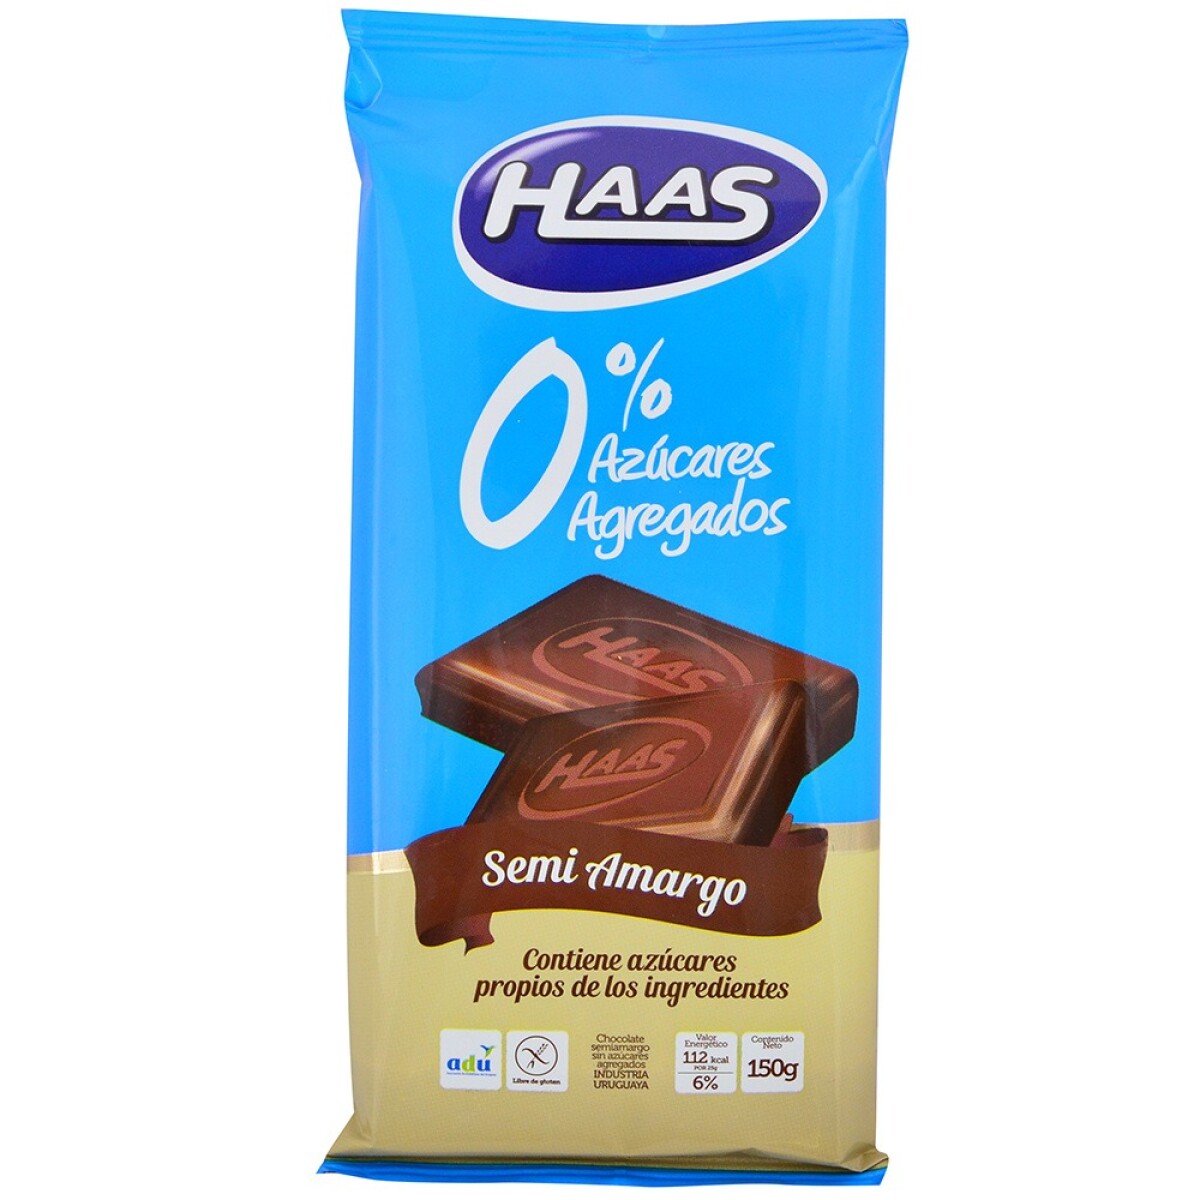 Chocolate Semi-amargo Haas 0% Azúcar 150 Grs. 